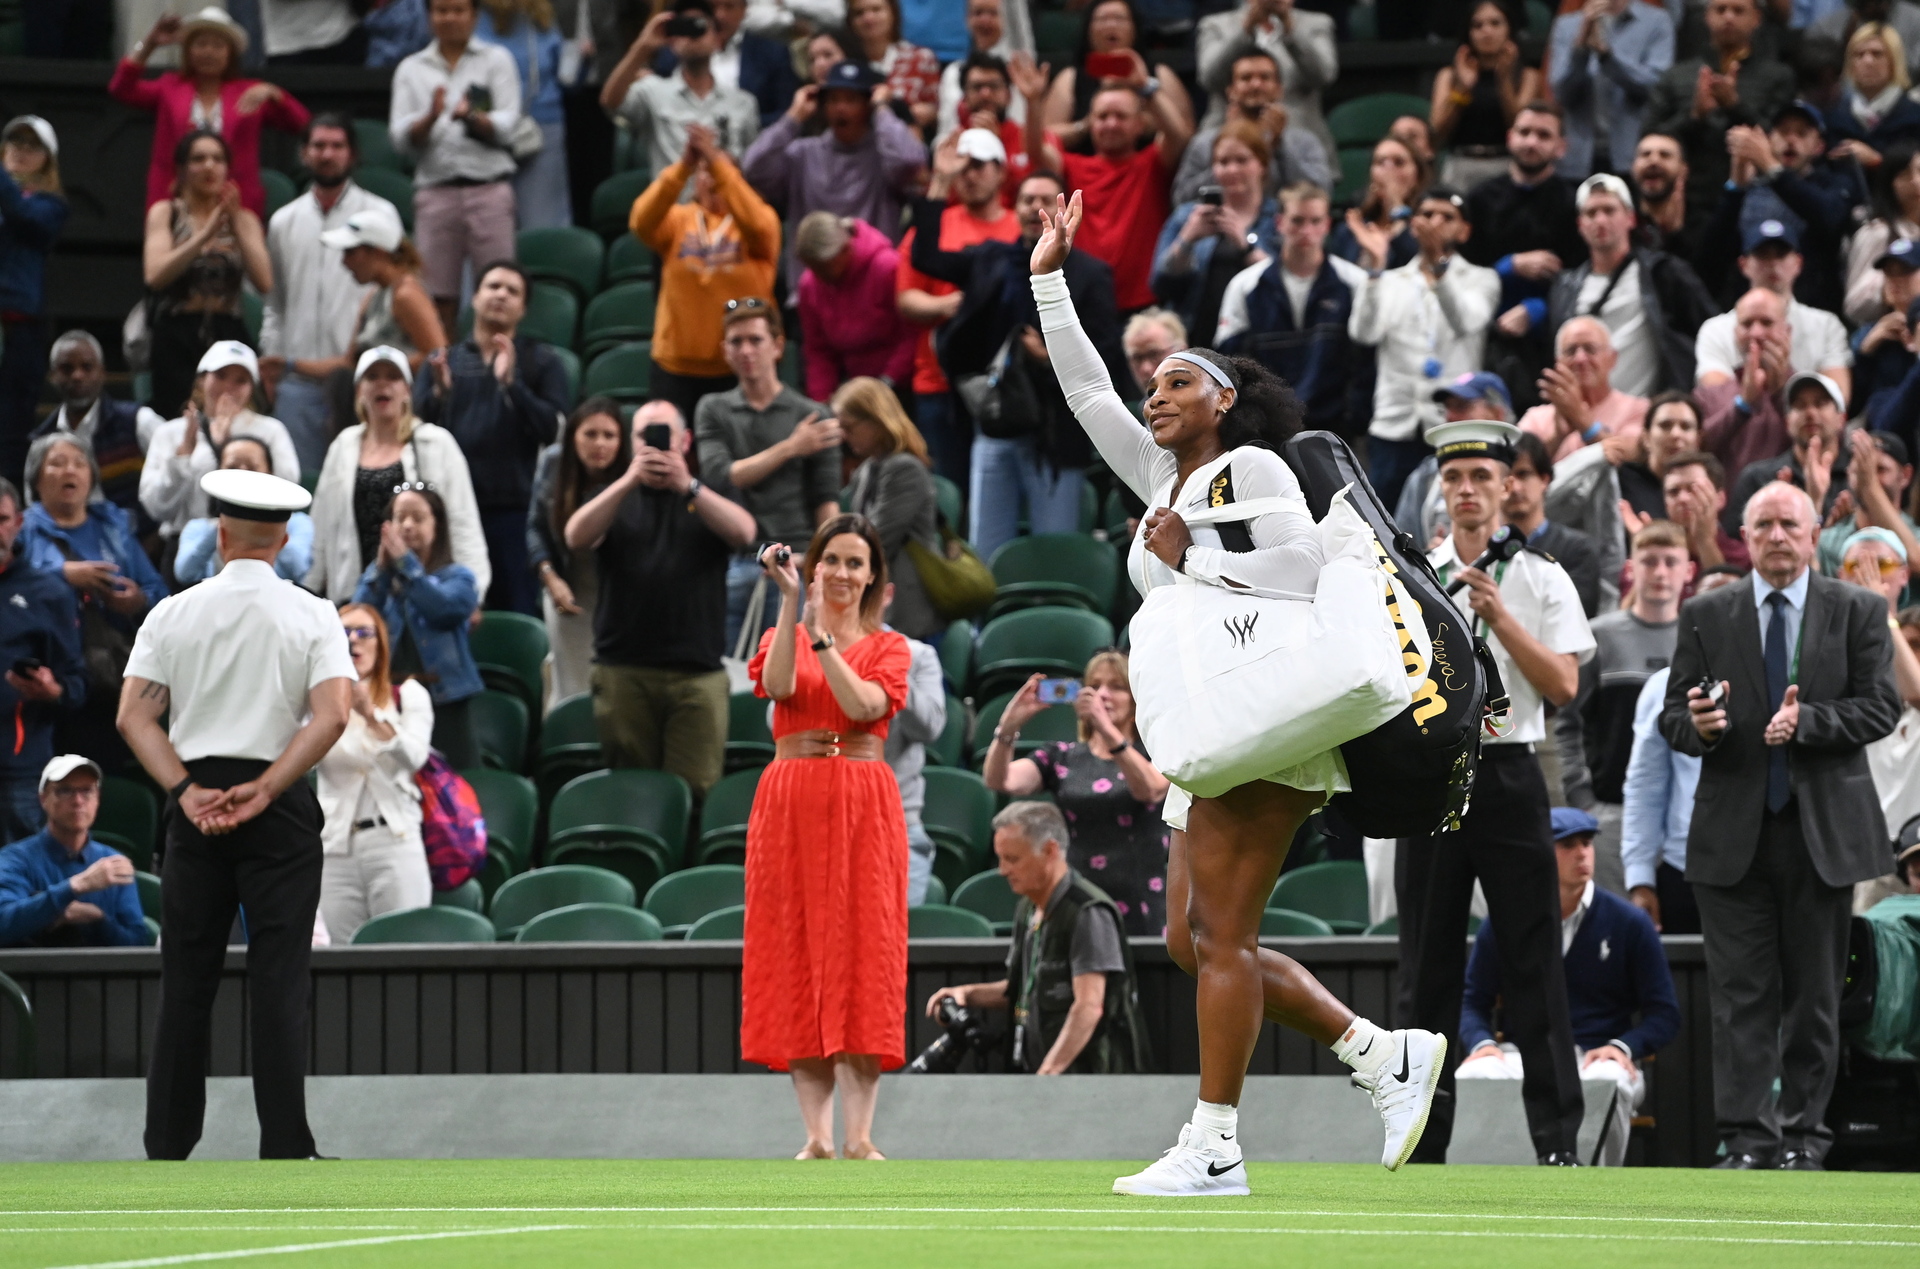 'Tengo que dejar de jugar tenis', anuncia Serena Williams